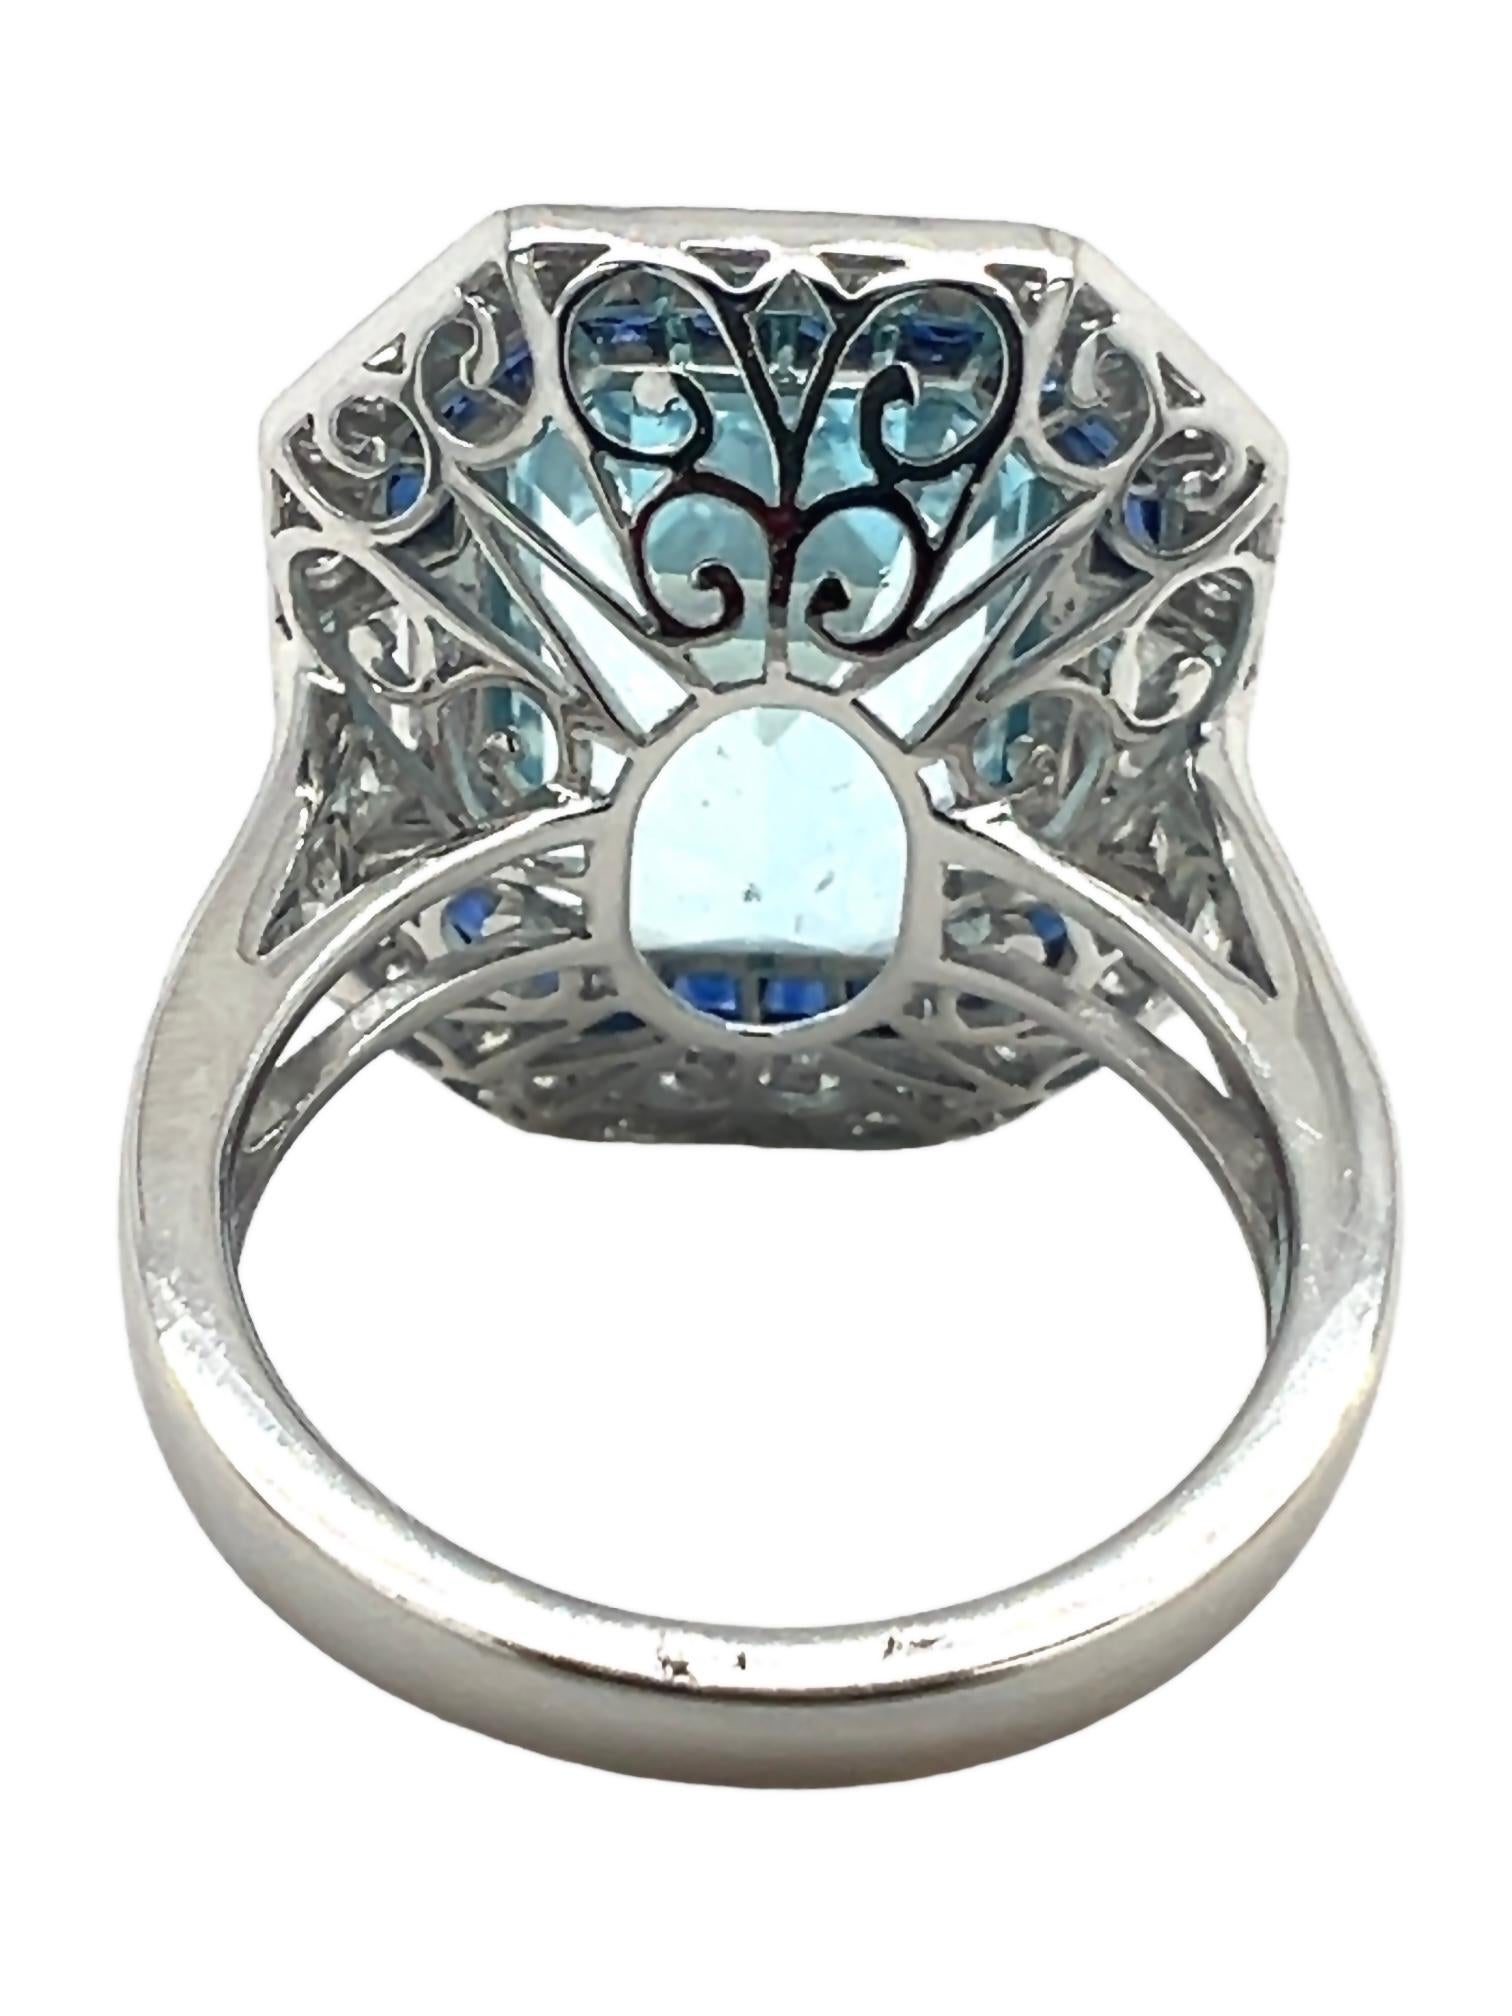 Emerald Cut Sophia D. 8.52 Carat Aquamarine Ring For Sale